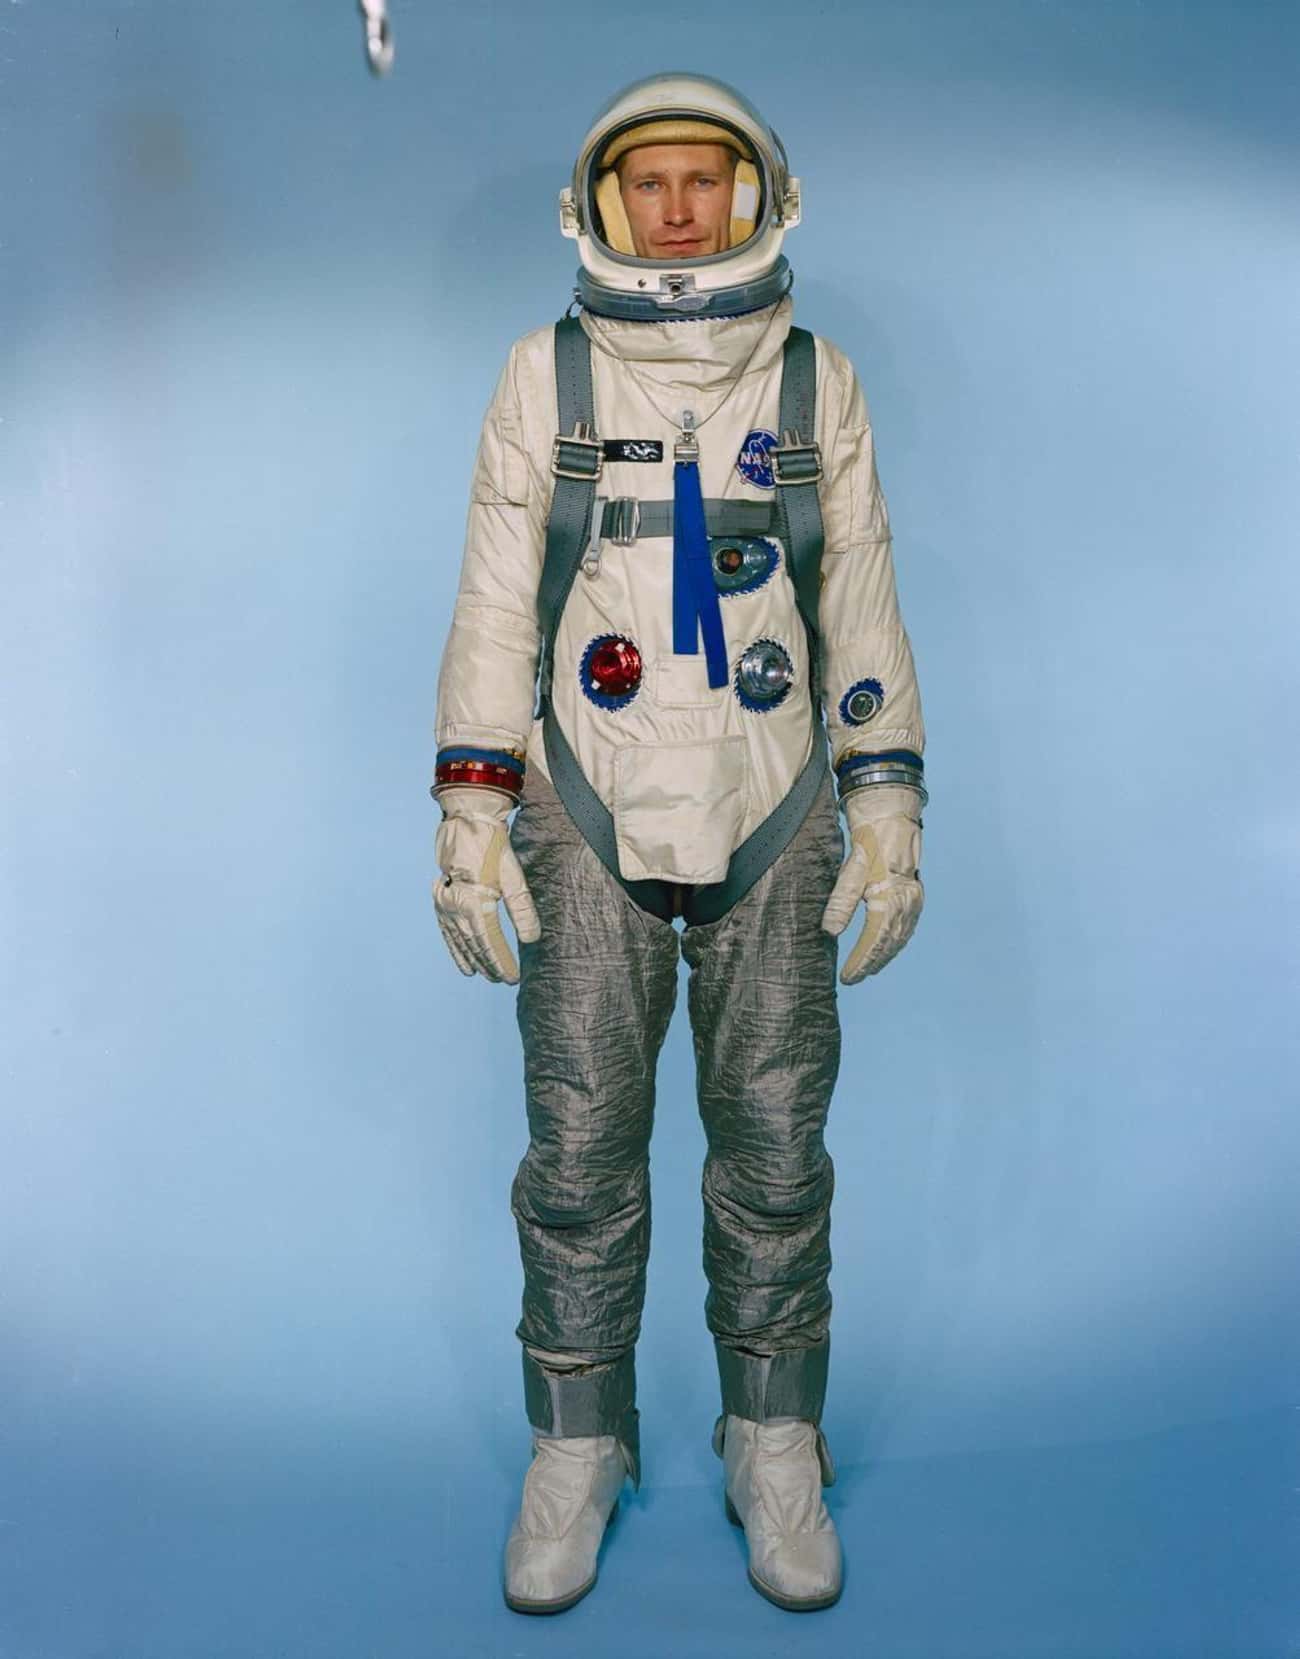 1964: Gemini Space Suit, United States